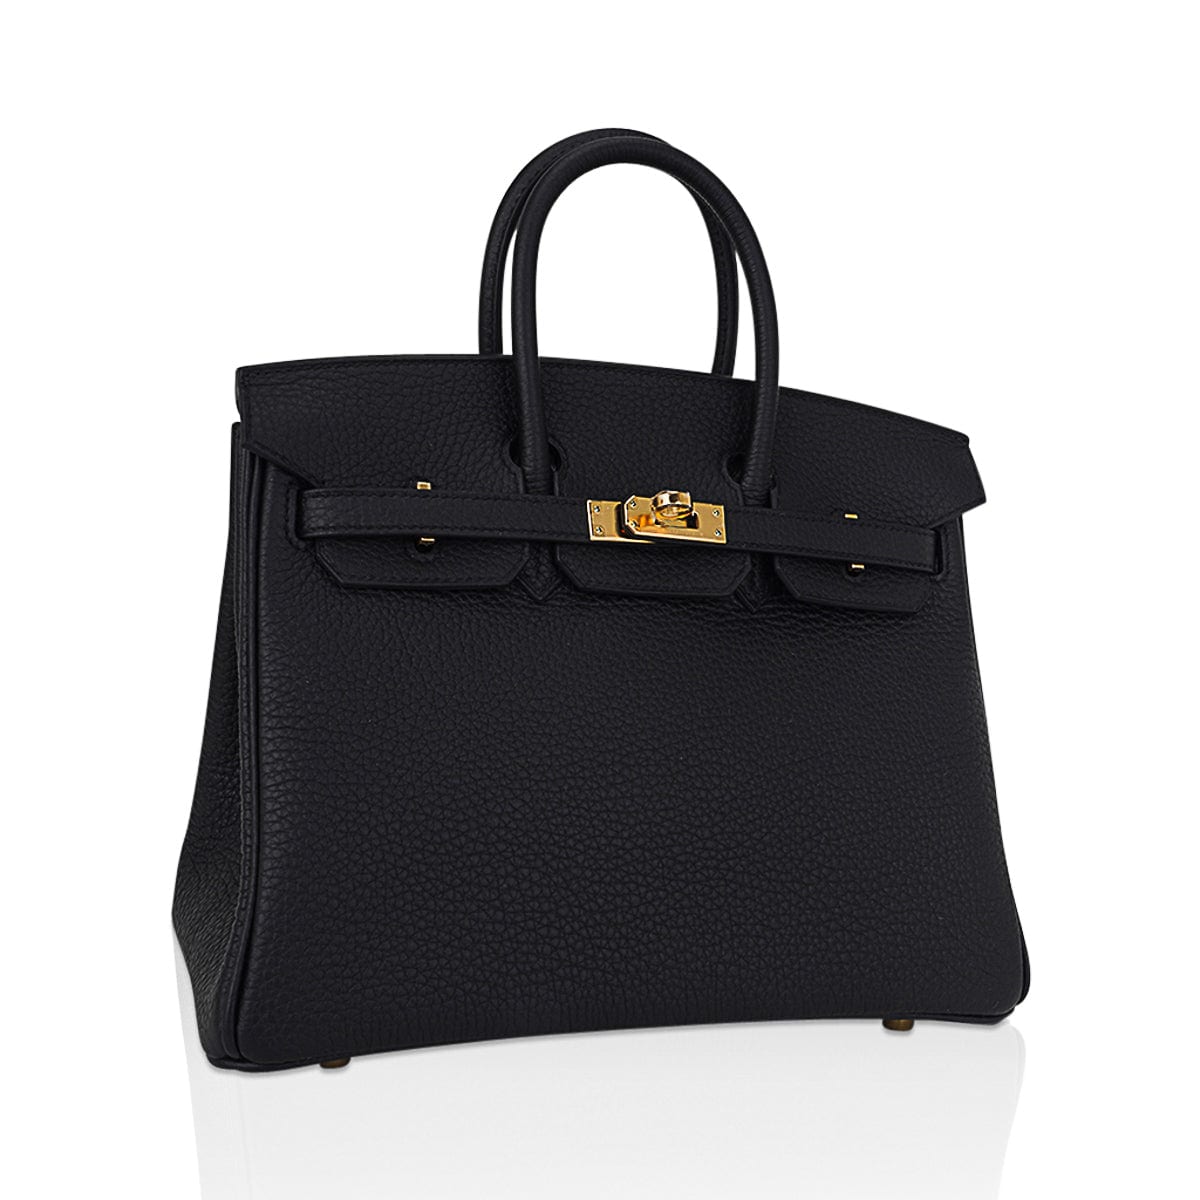 Hermes Birkin 25 Black Bag Gold Hardware Togo Leather